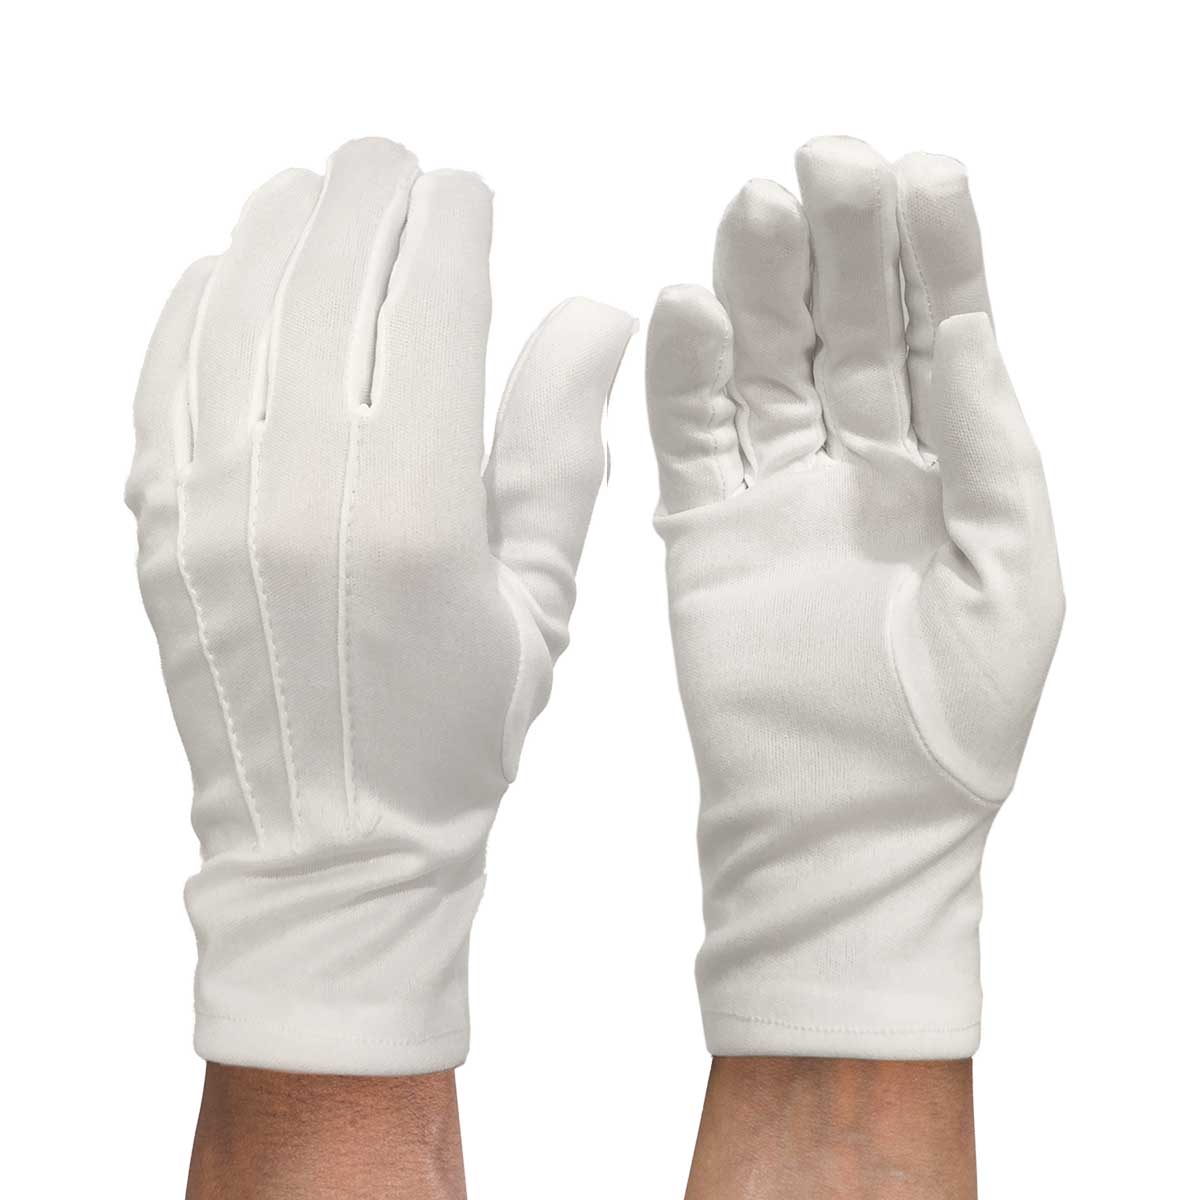 Handskar vita med söm